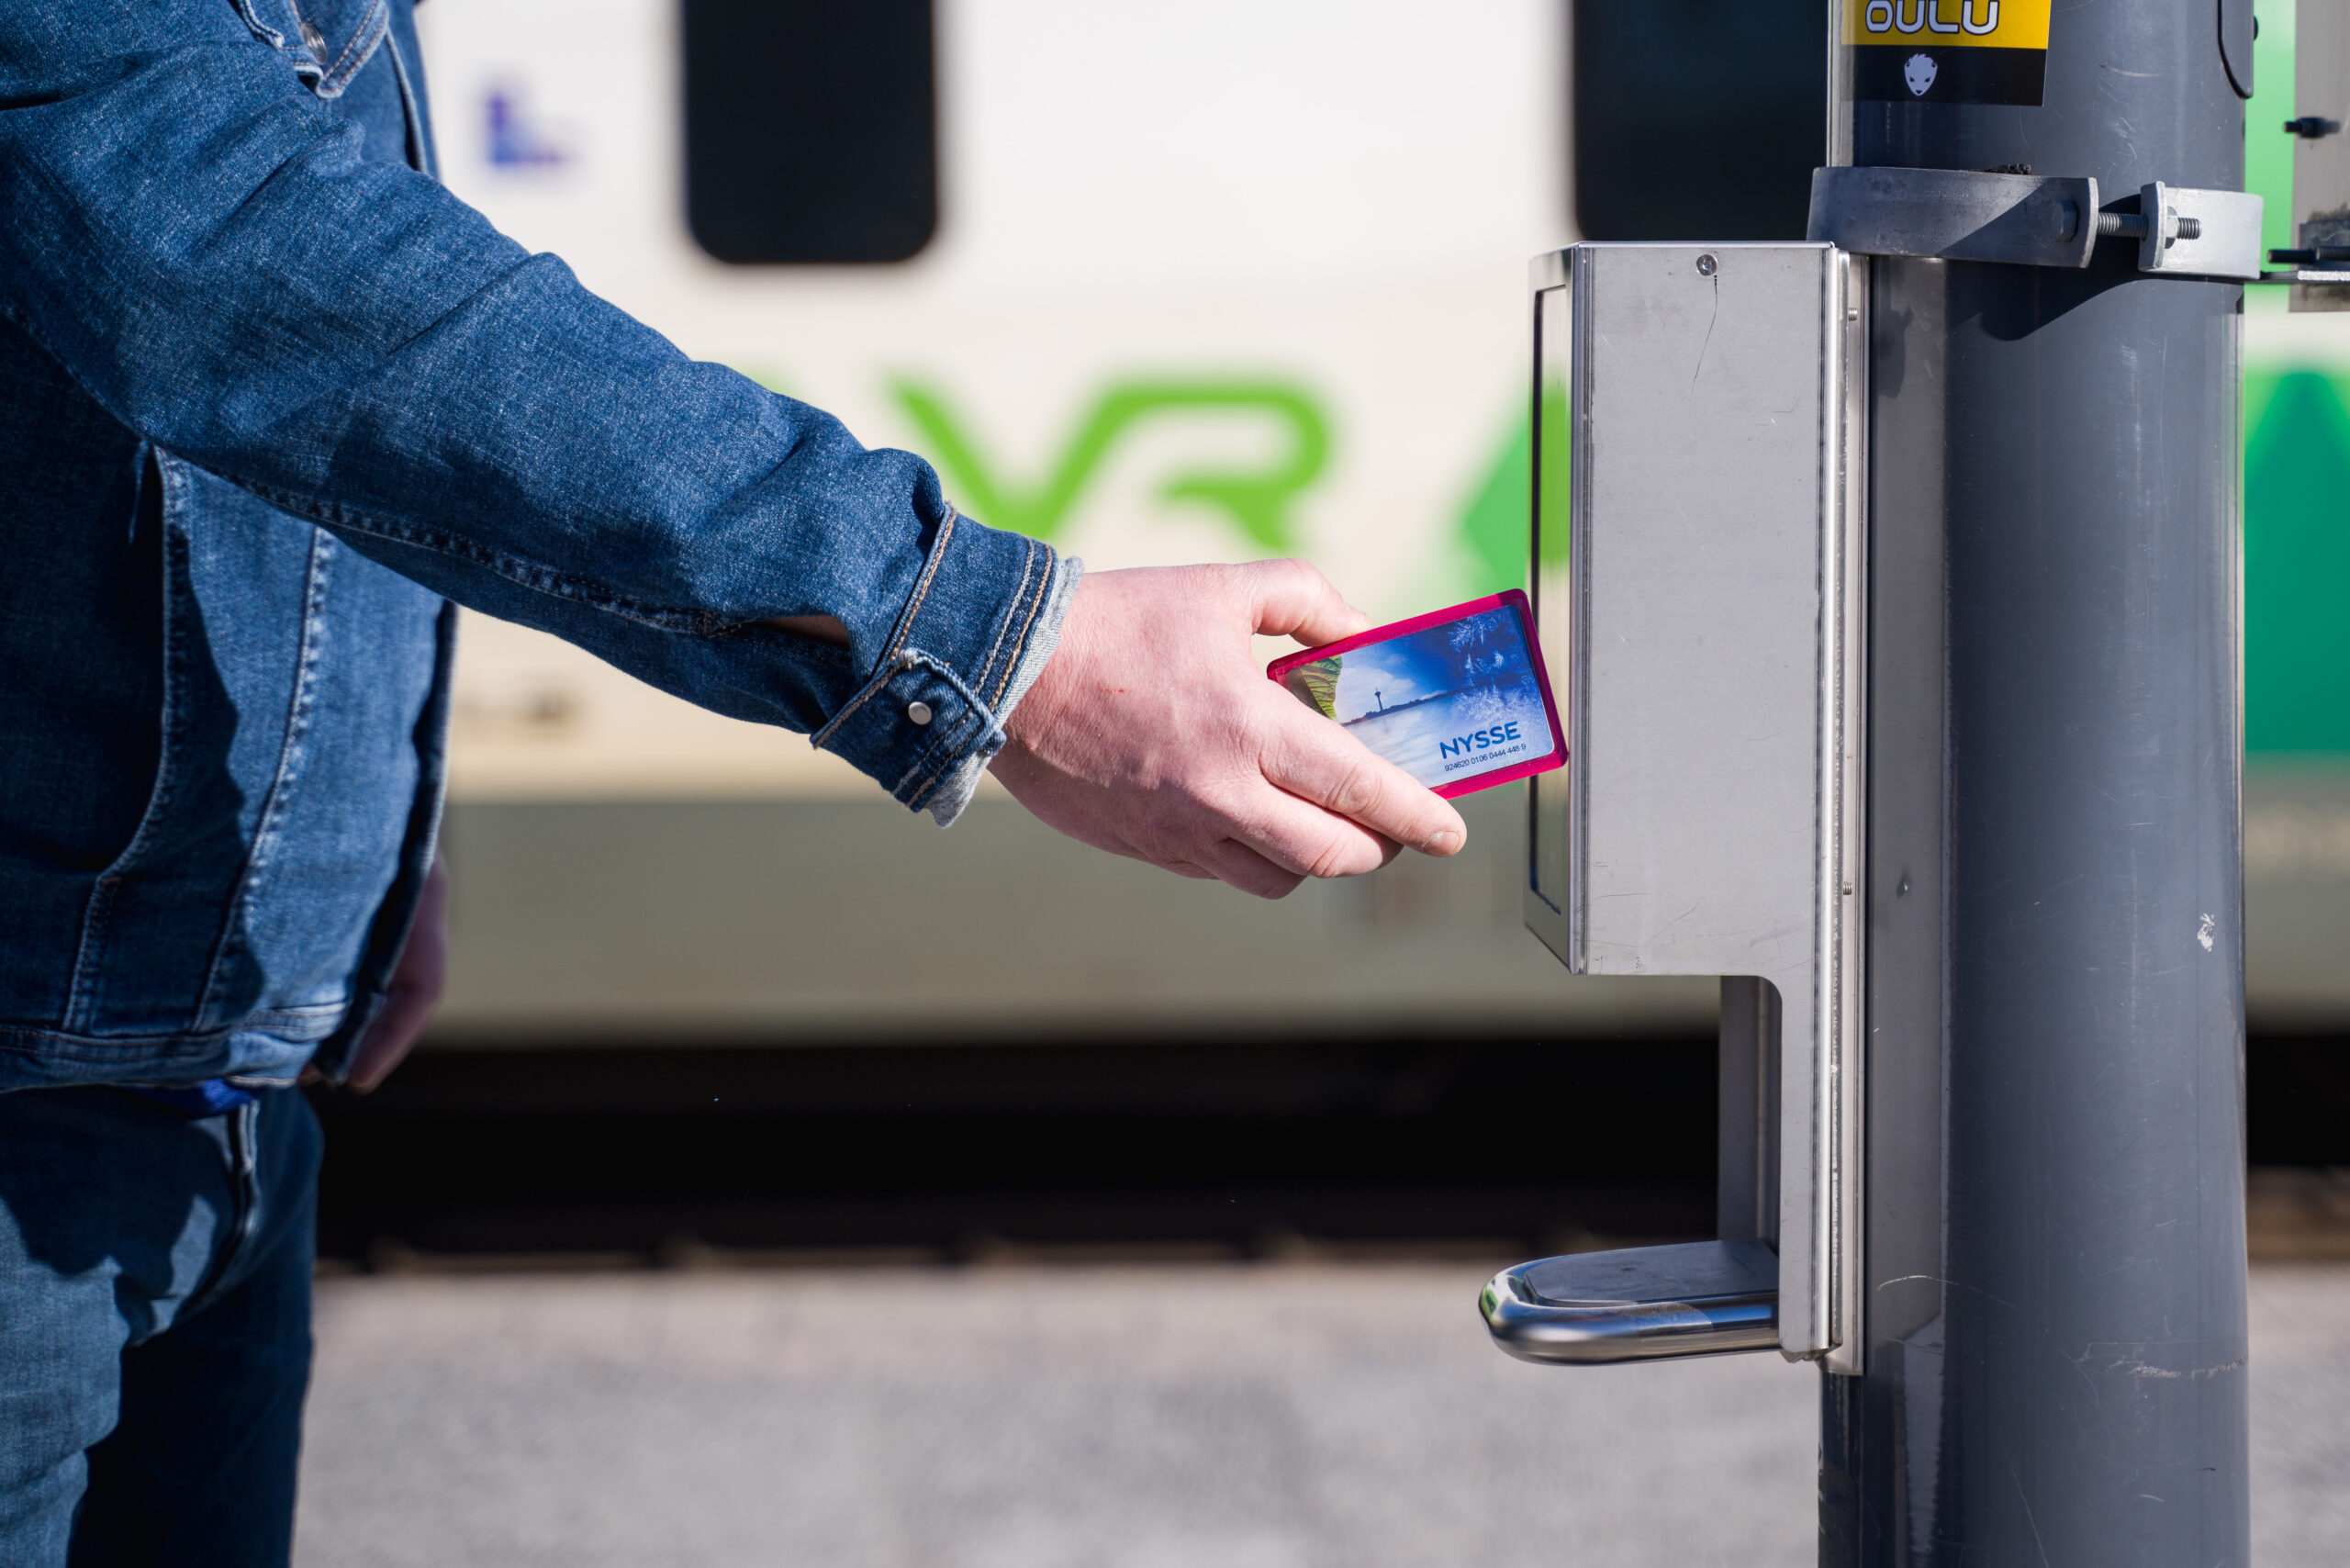 Kuvassa Nyssen matkakorttia leimataan juna-asemalla ennen junaan nousua. Kortin ja leimauslaitteen takana näkyy VR:n juna.